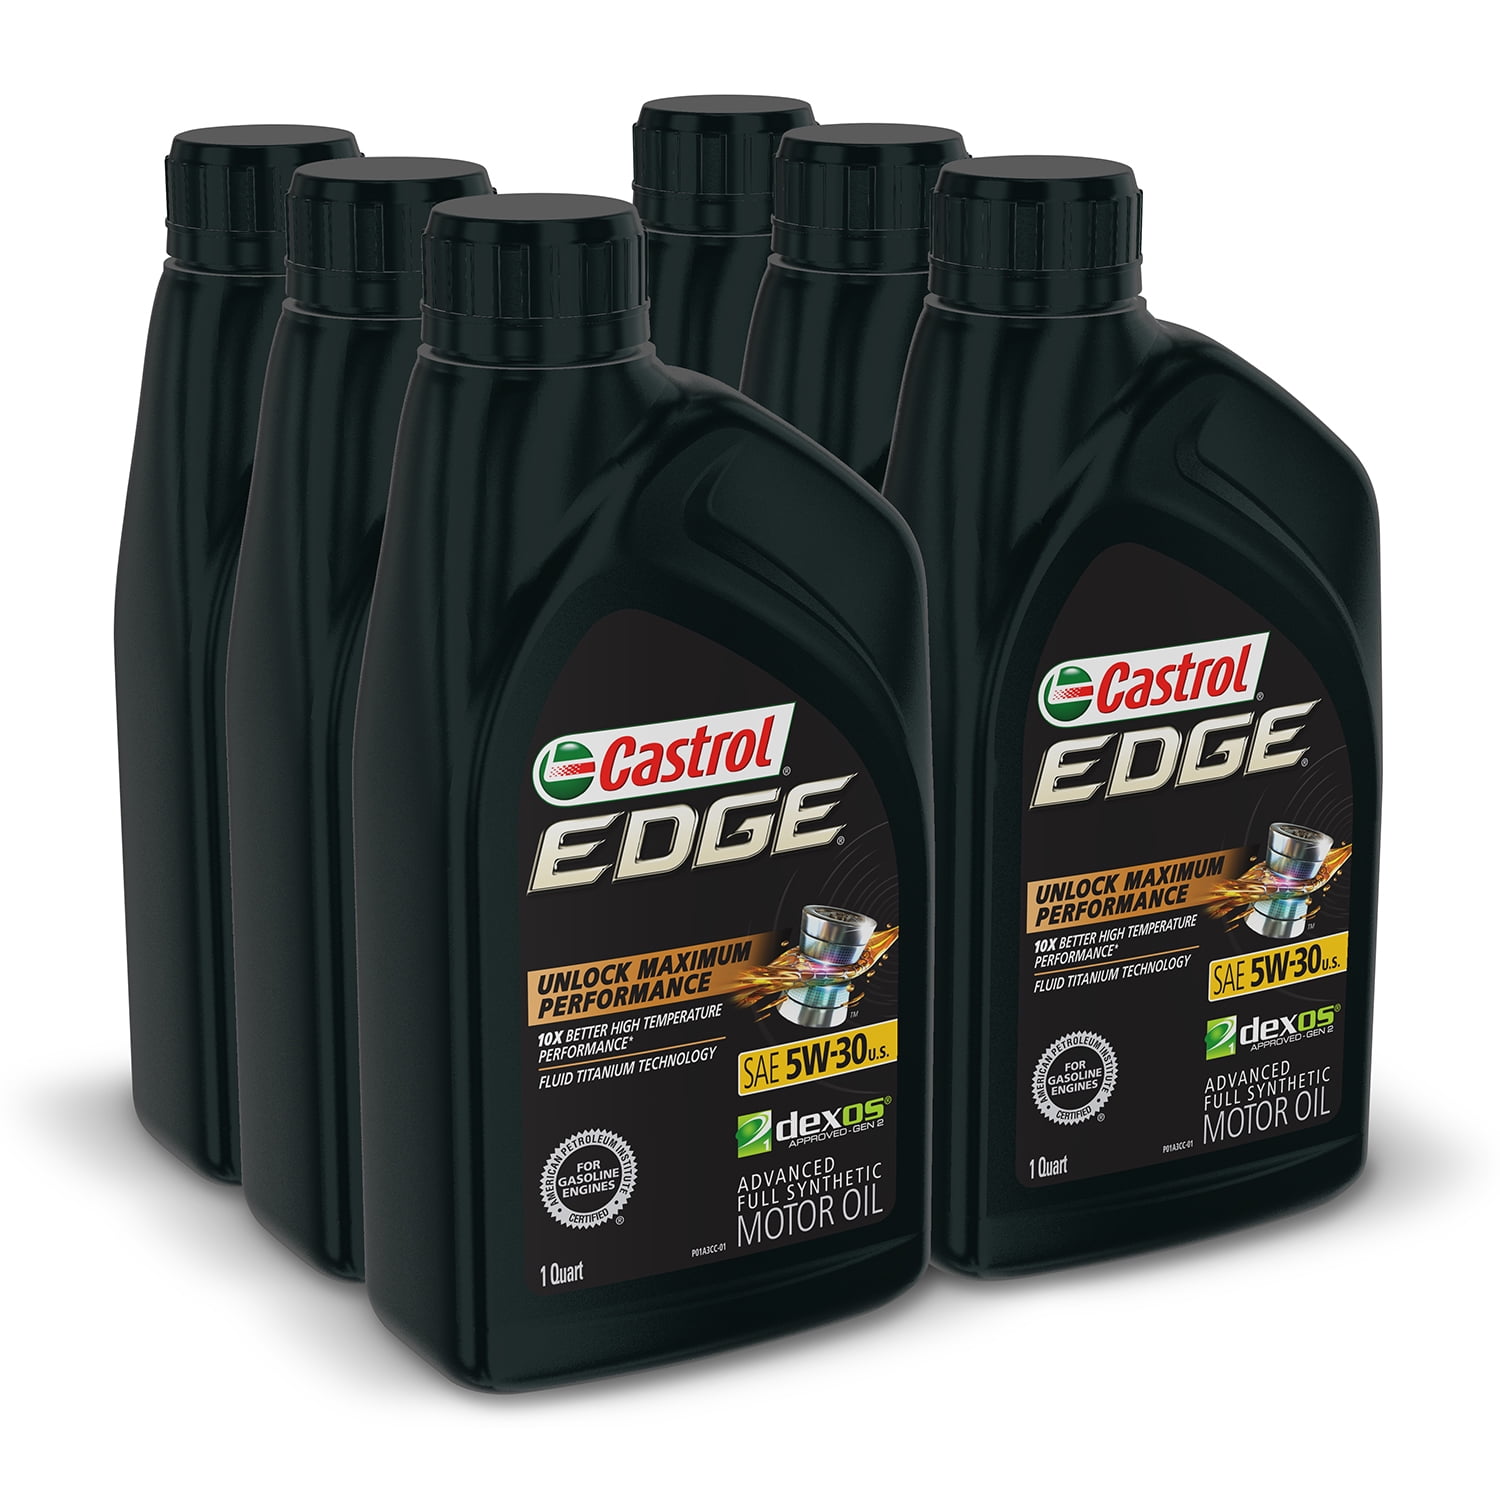 Castrol - Aceite de Motor avanzado Completamente sintético Edge 5W